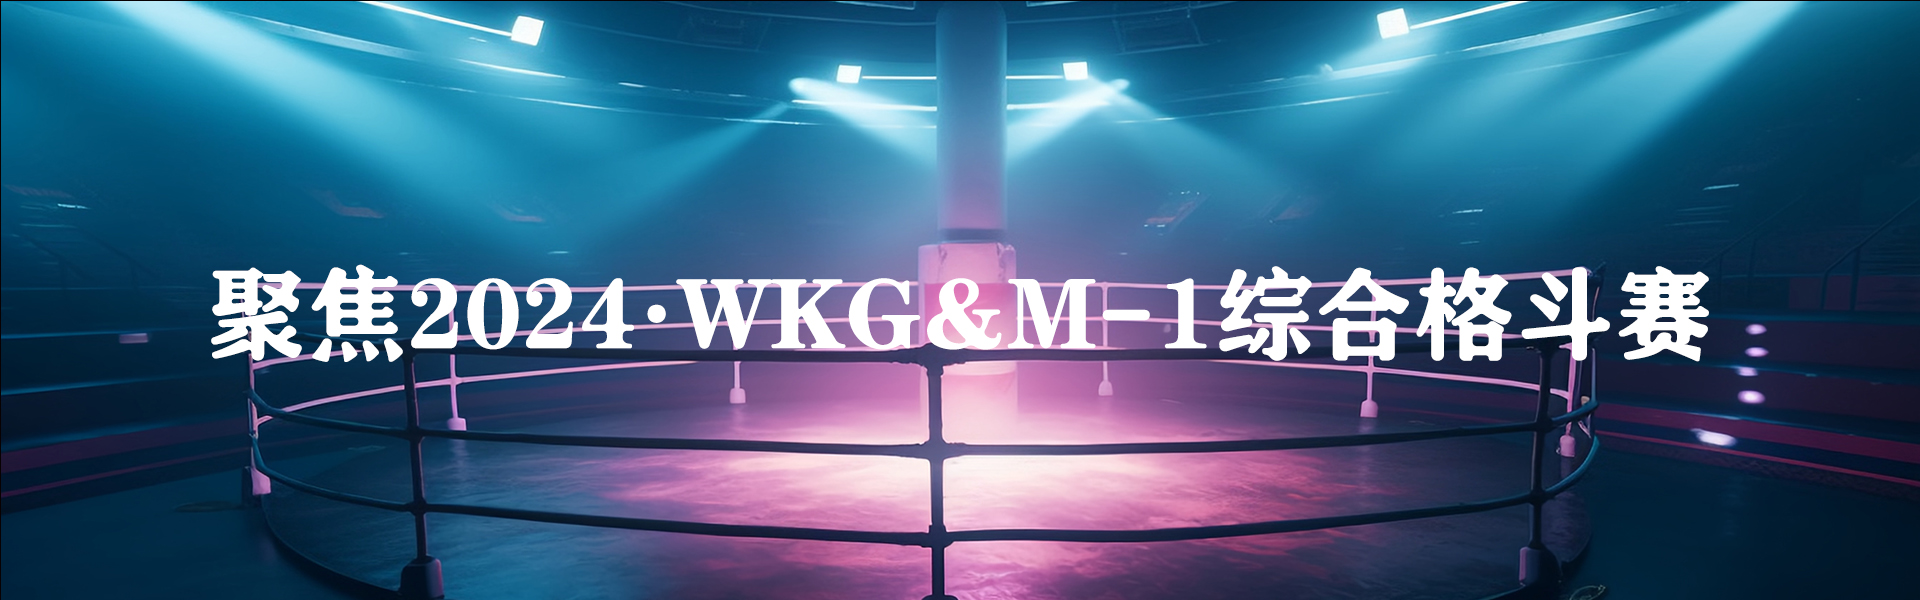  聚焦2024·WKG&M-1综合格斗赛